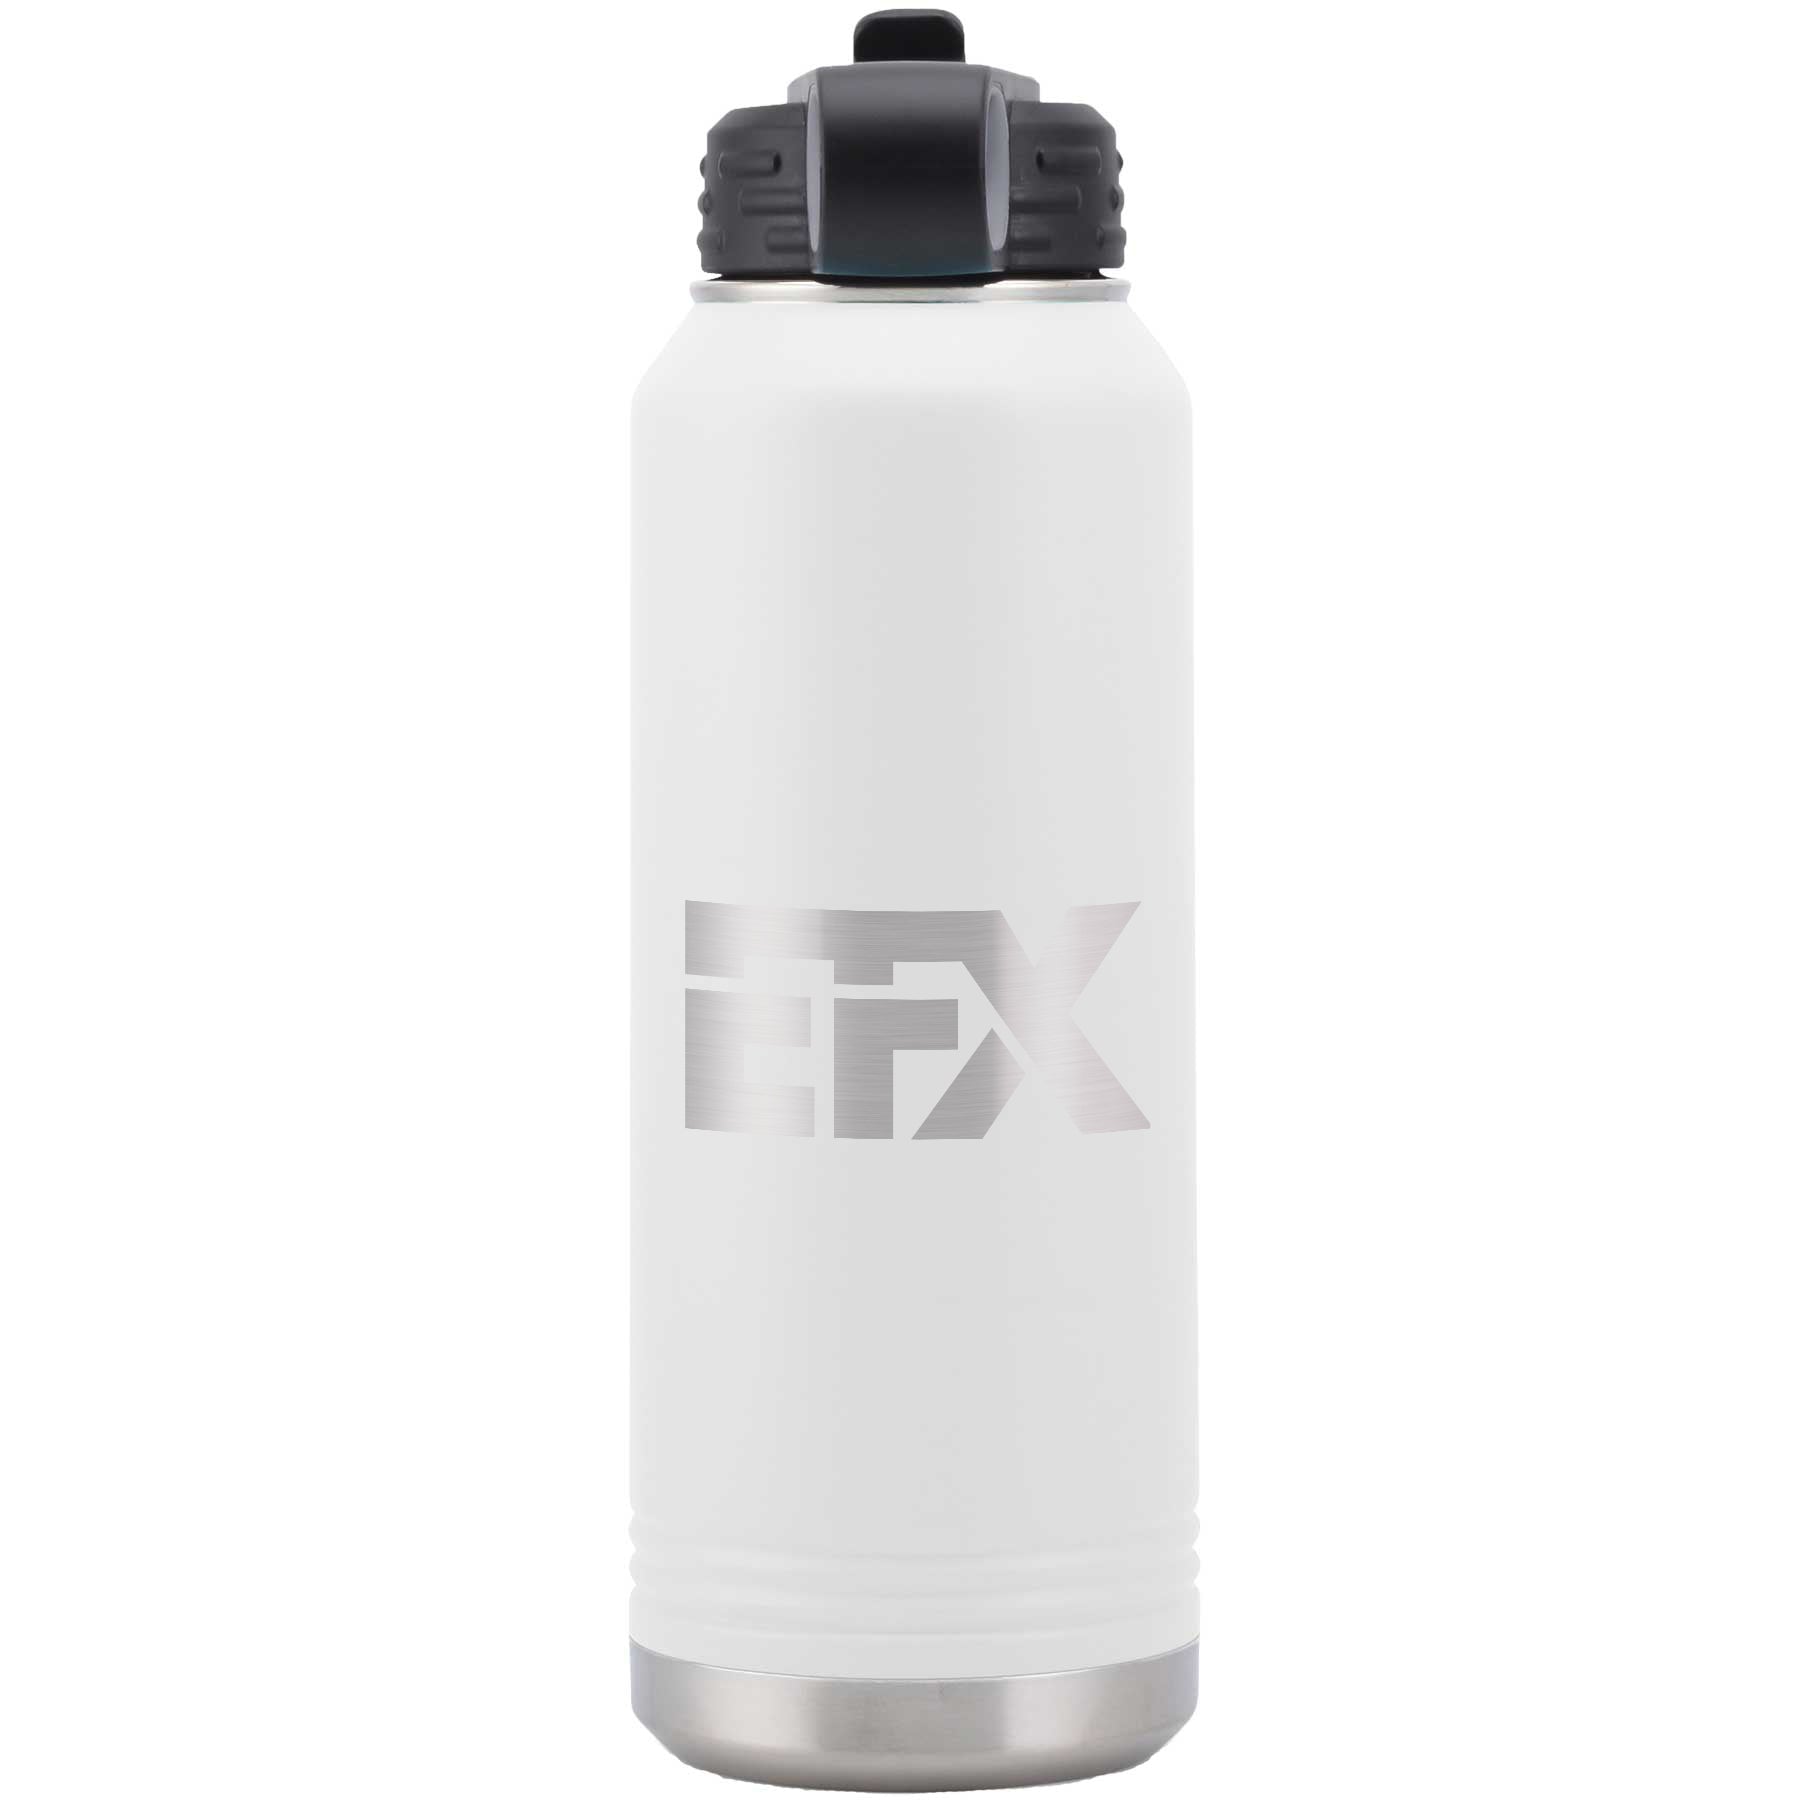 Logo-Short-Stainless on White Water Bottle